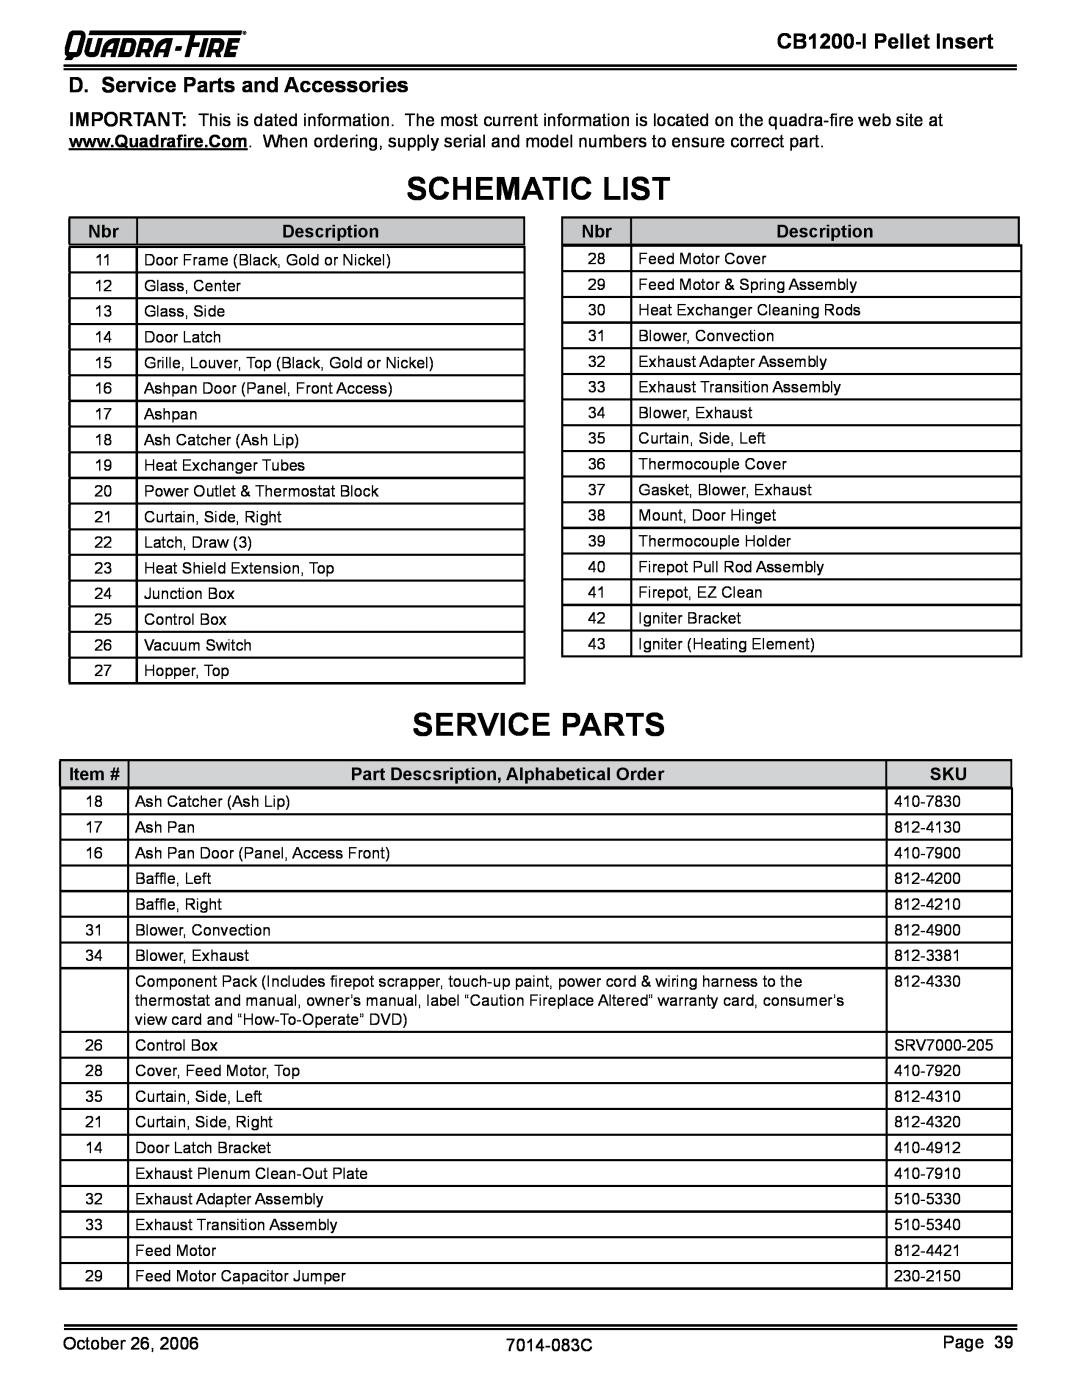 Quadra-Fire CB1200I-B owner manual Schematic List, D. Service Parts and Accessories, CB1200-IPellet Insert 